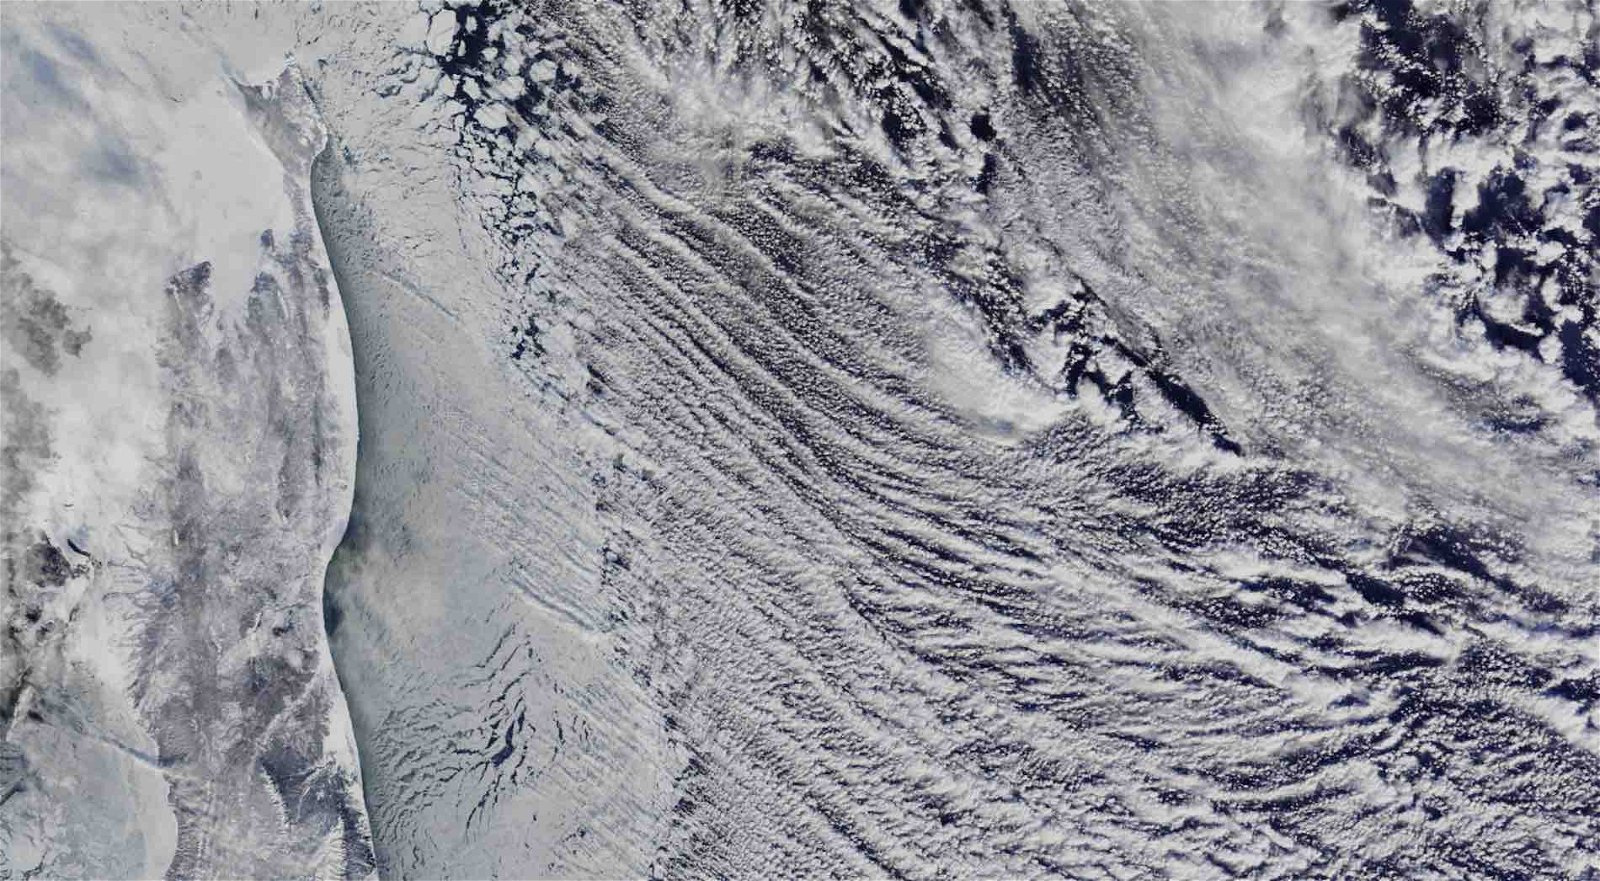 كشفت صور الأقمار الصناعية لوكالة ناسا عن شيء غريب في السماء فوق الساحل الشرقي لروسيا